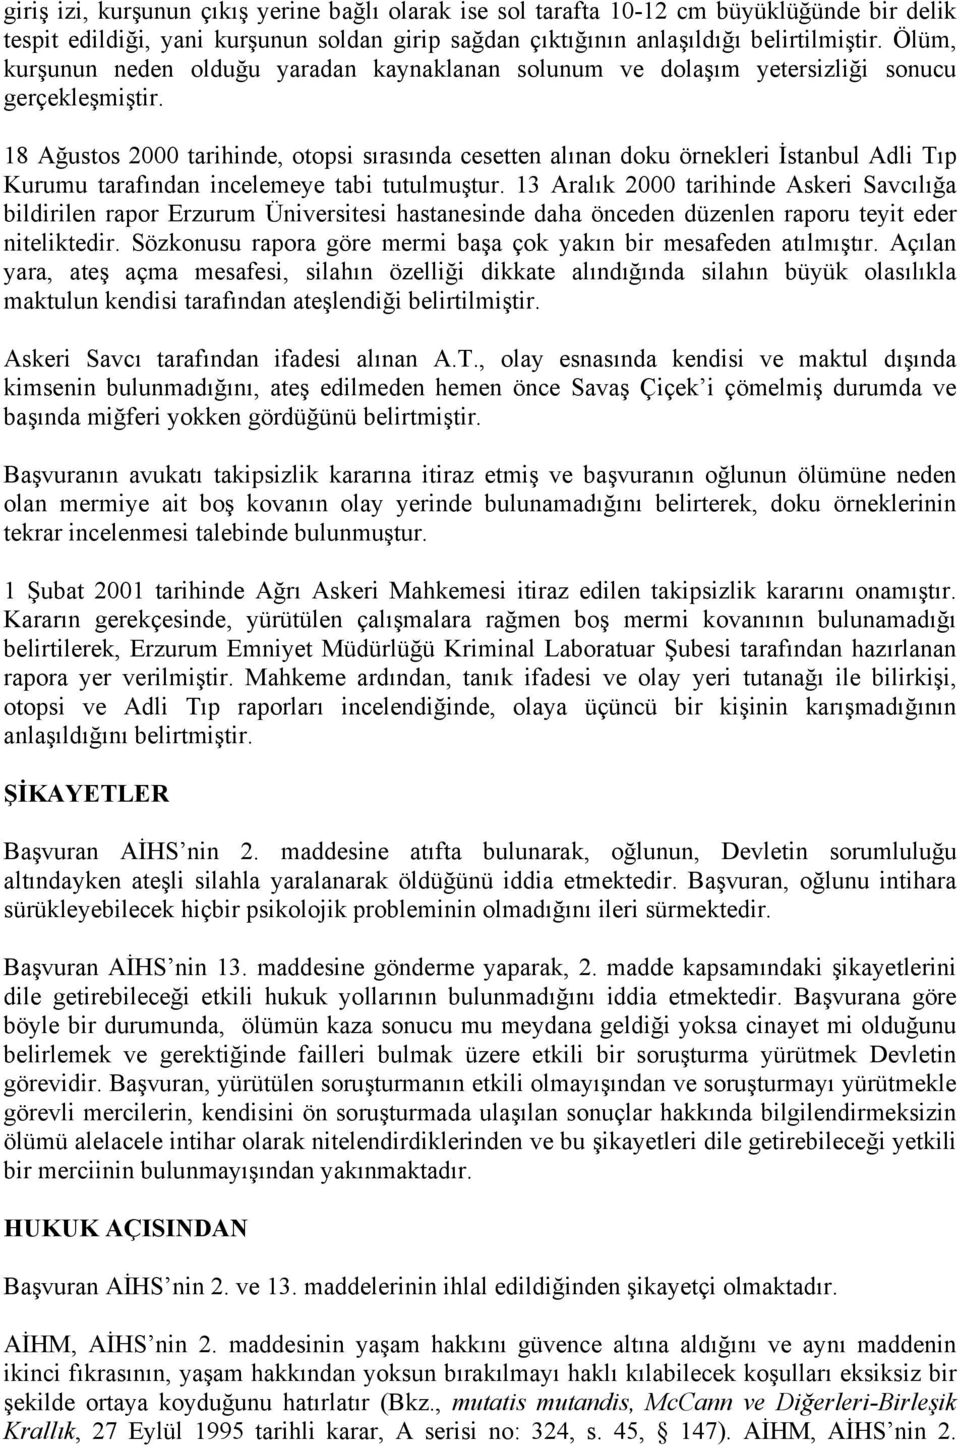 18 Ağustos 2000 tarihinde, otopsi sırasında cesetten alınan doku örnekleri İstanbul Adli Tıp Kurumu tarafından incelemeye tabi tutulmuştur.